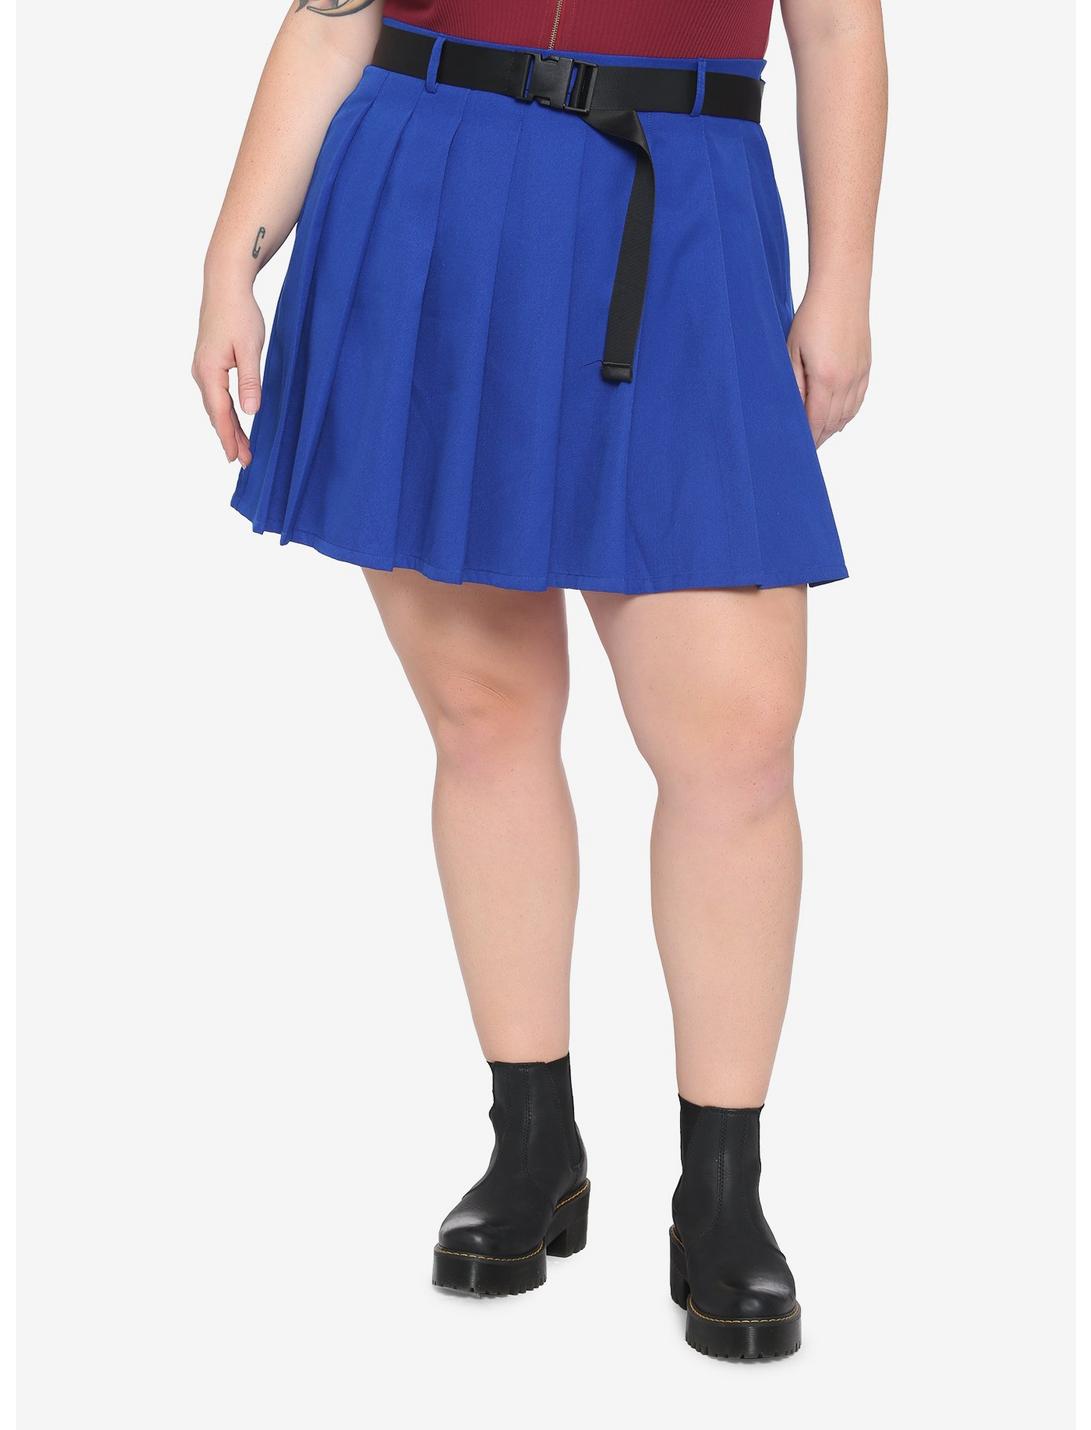 Blue & Black Buckle Belt Skirt Plus Size, BLUE, hi-res